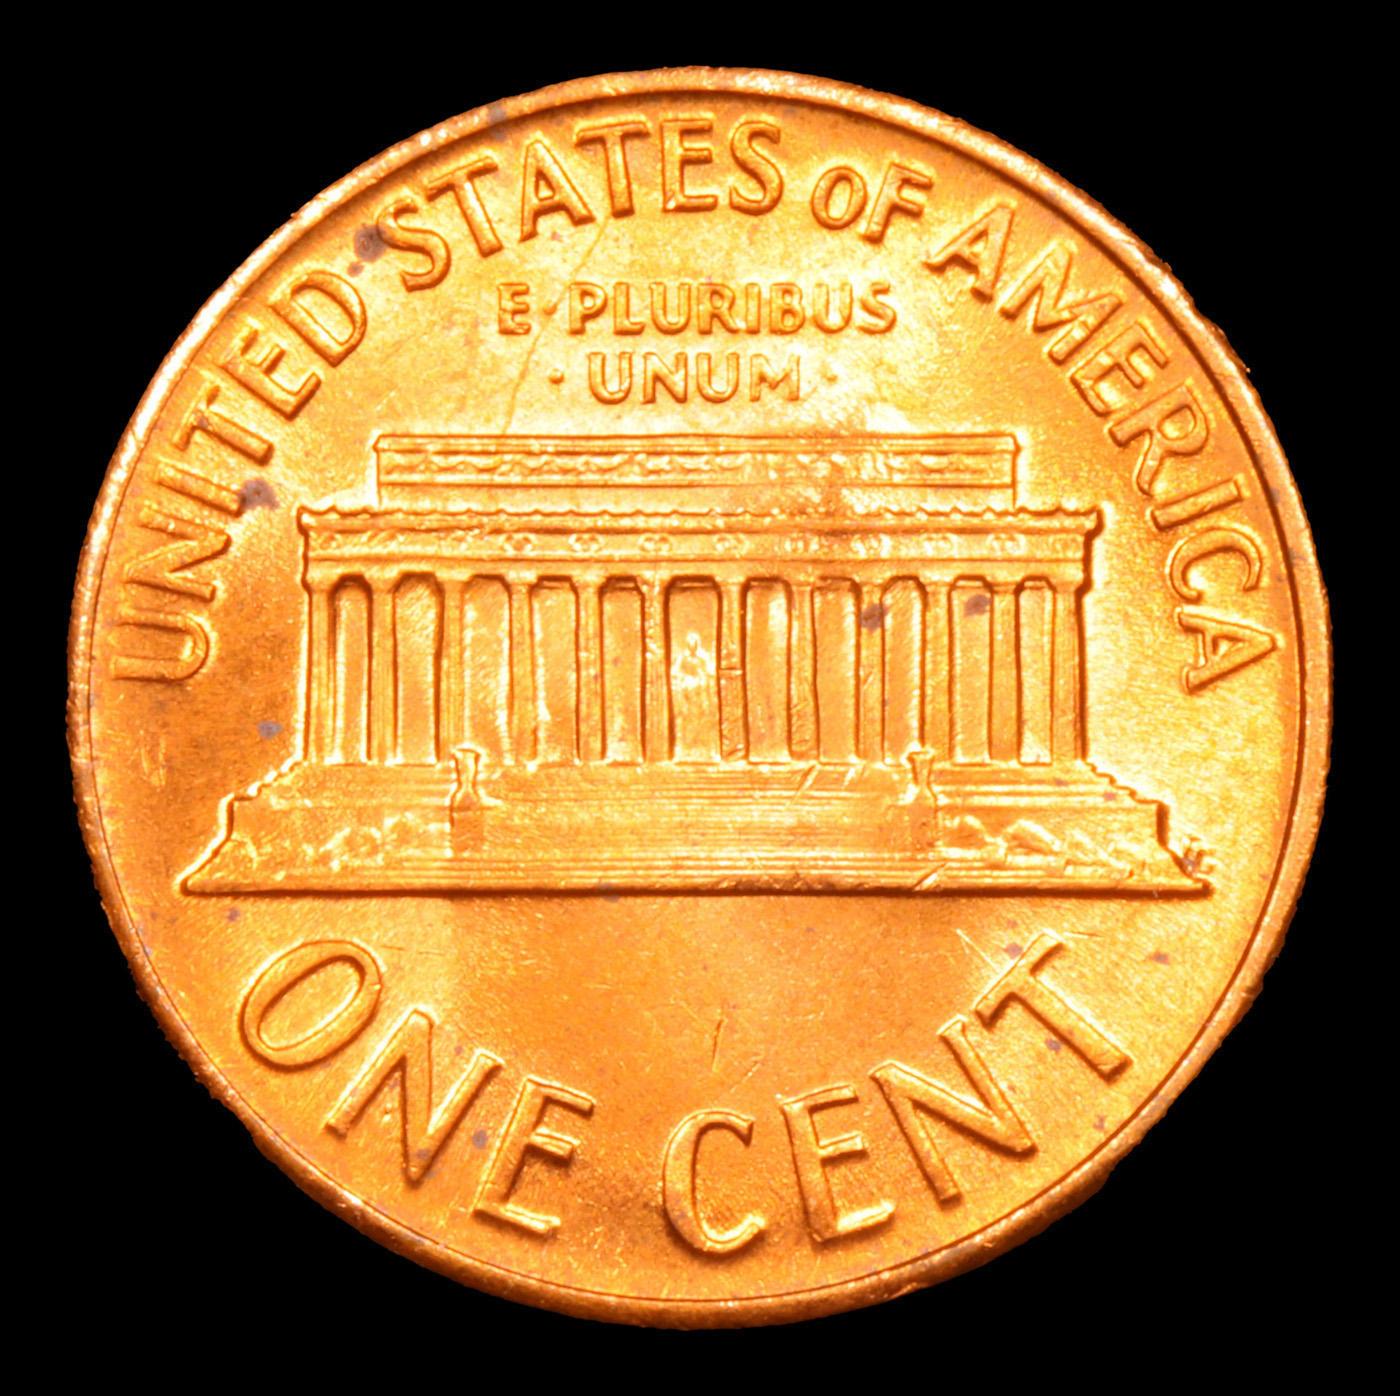 1967-p Lincoln Cent 1c Grades GEM+ Unc RD